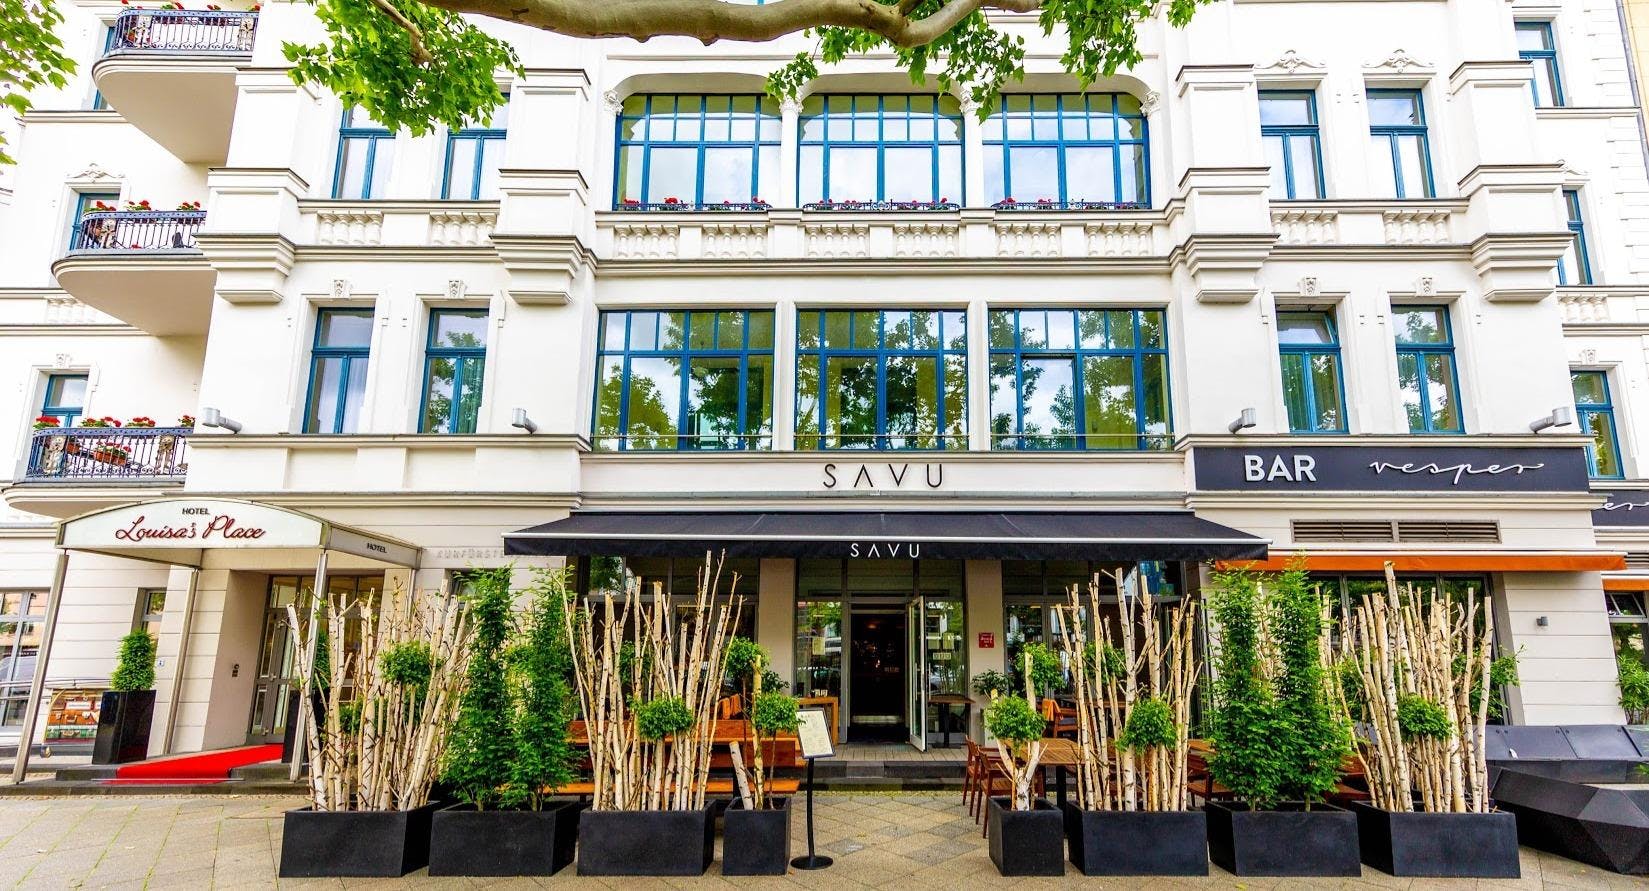 Photo of restaurant SAVU in Wilmersdorf, Berlin